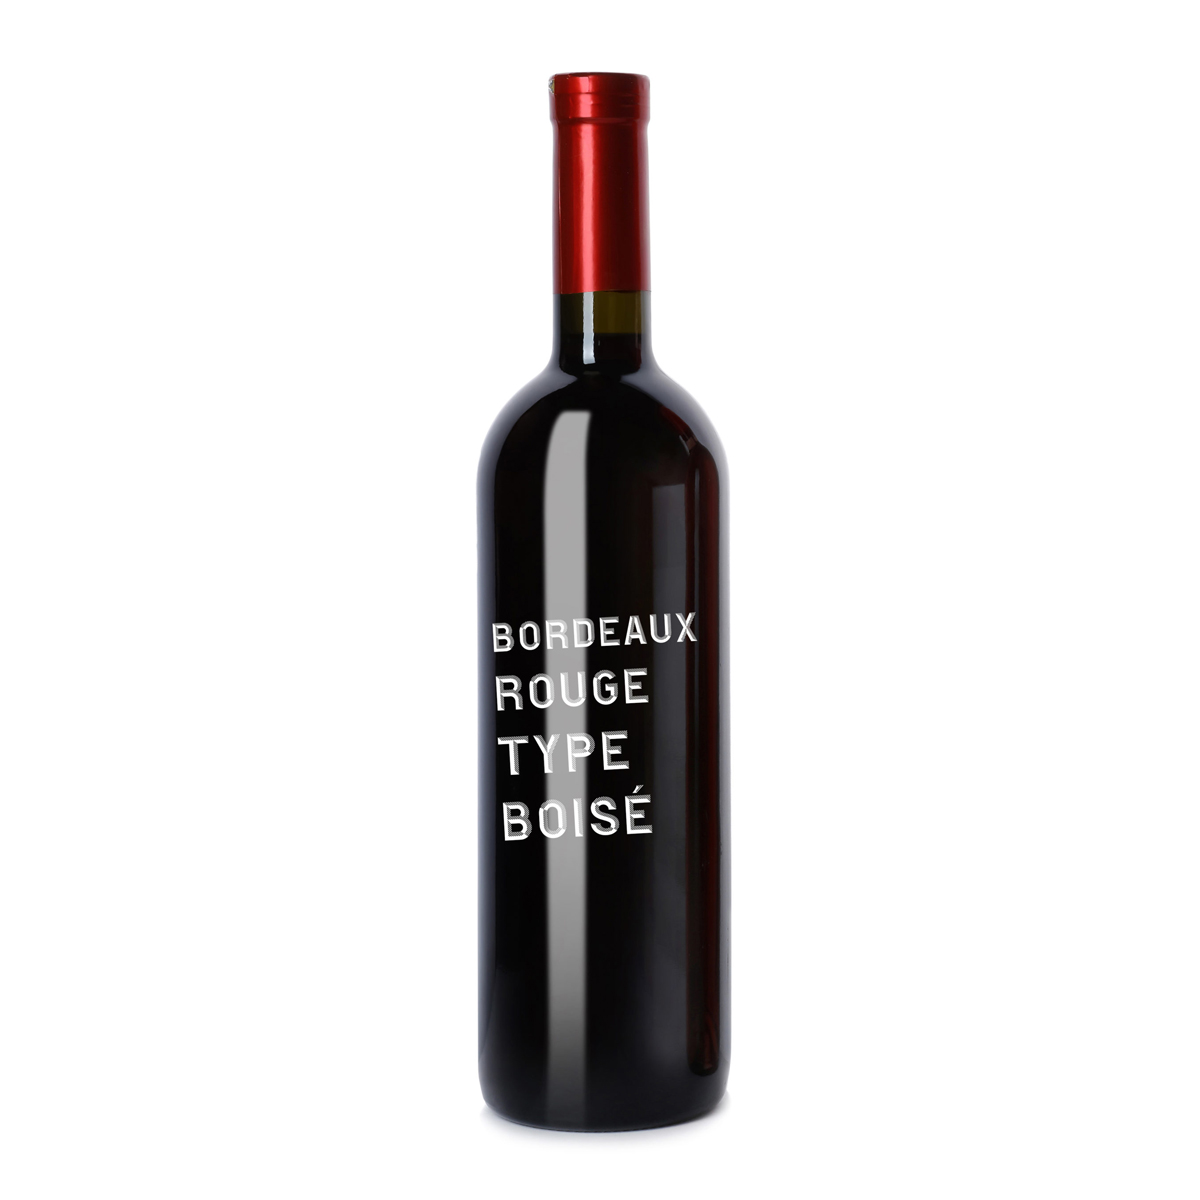 法國AOC Bordeaux red, aged in oak barrel